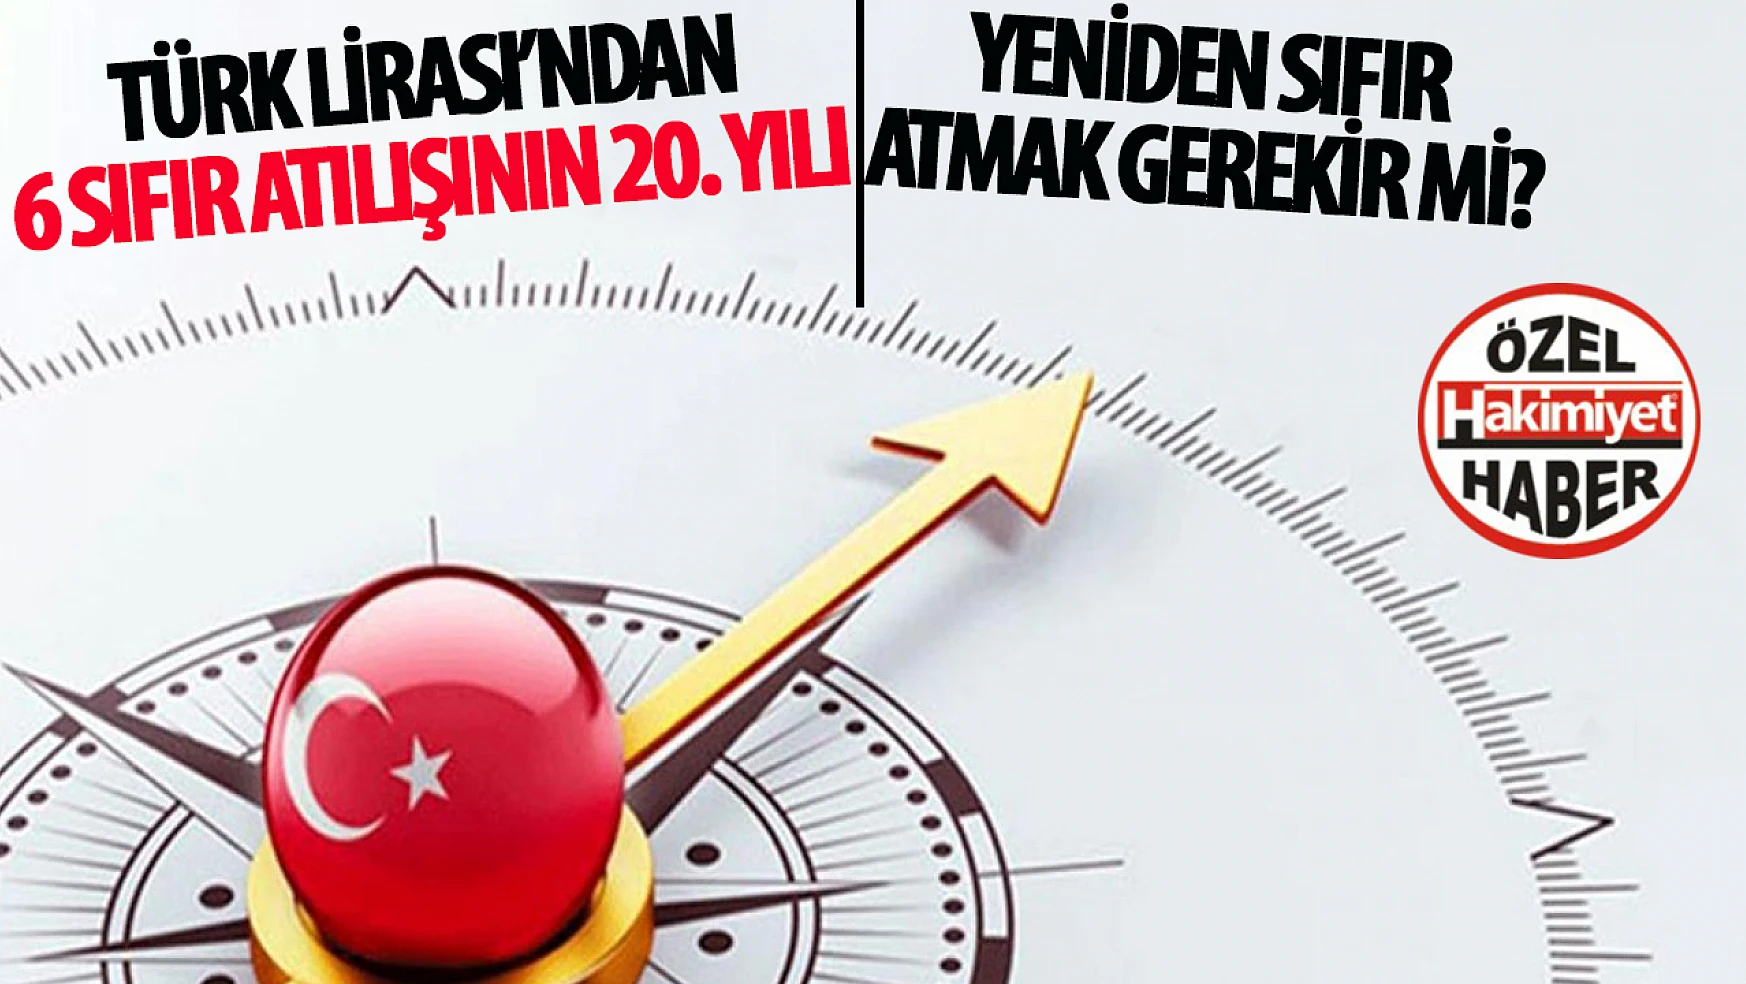 Türkiye Ekonomisinde TL'de Bir Sıfır Daha Atılacak mı? 20 Yıl Önceki Reformdan Sonra Ekonomideki Gelişmeler…